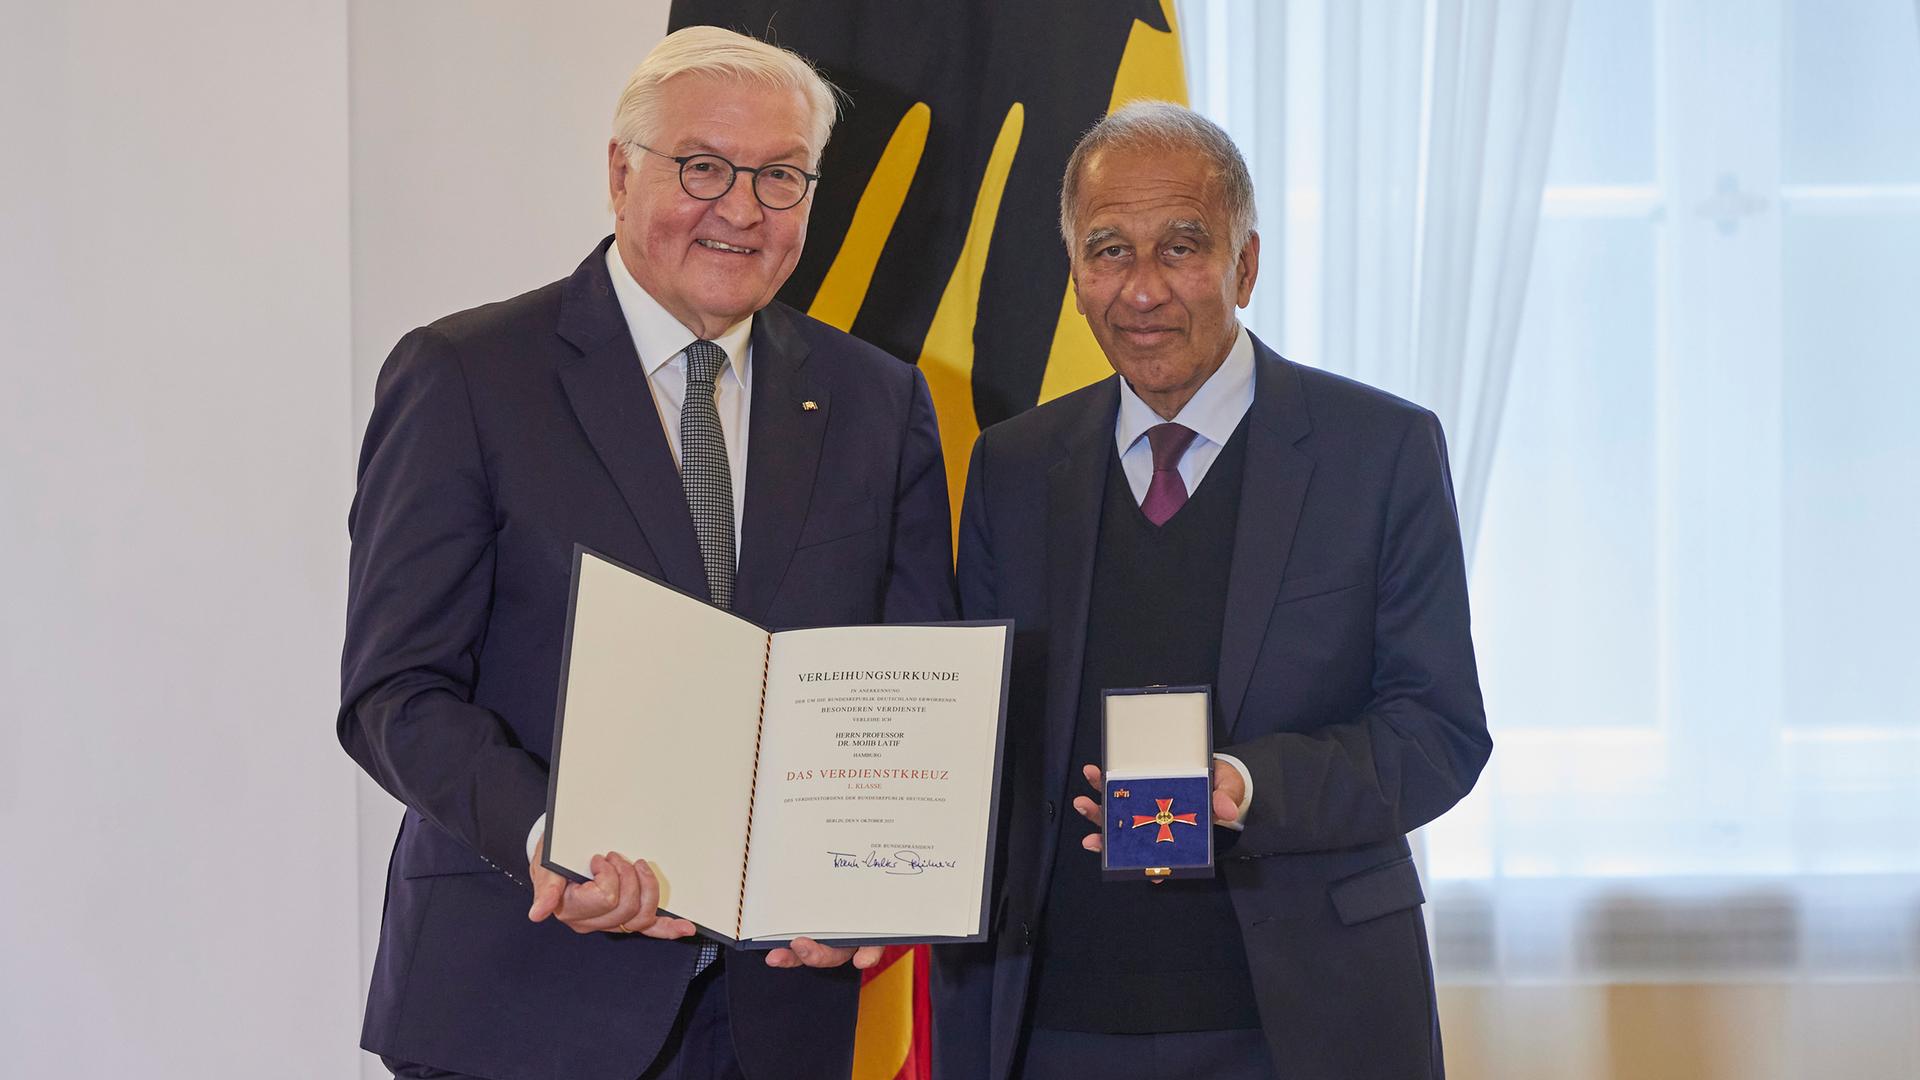 Bundespräsident Frank-Walter Steinmeier hält eine Urkunde in der Hand, neben ihm steht Mojib Larif mit dem Verdienstorden in einem Kästchen.